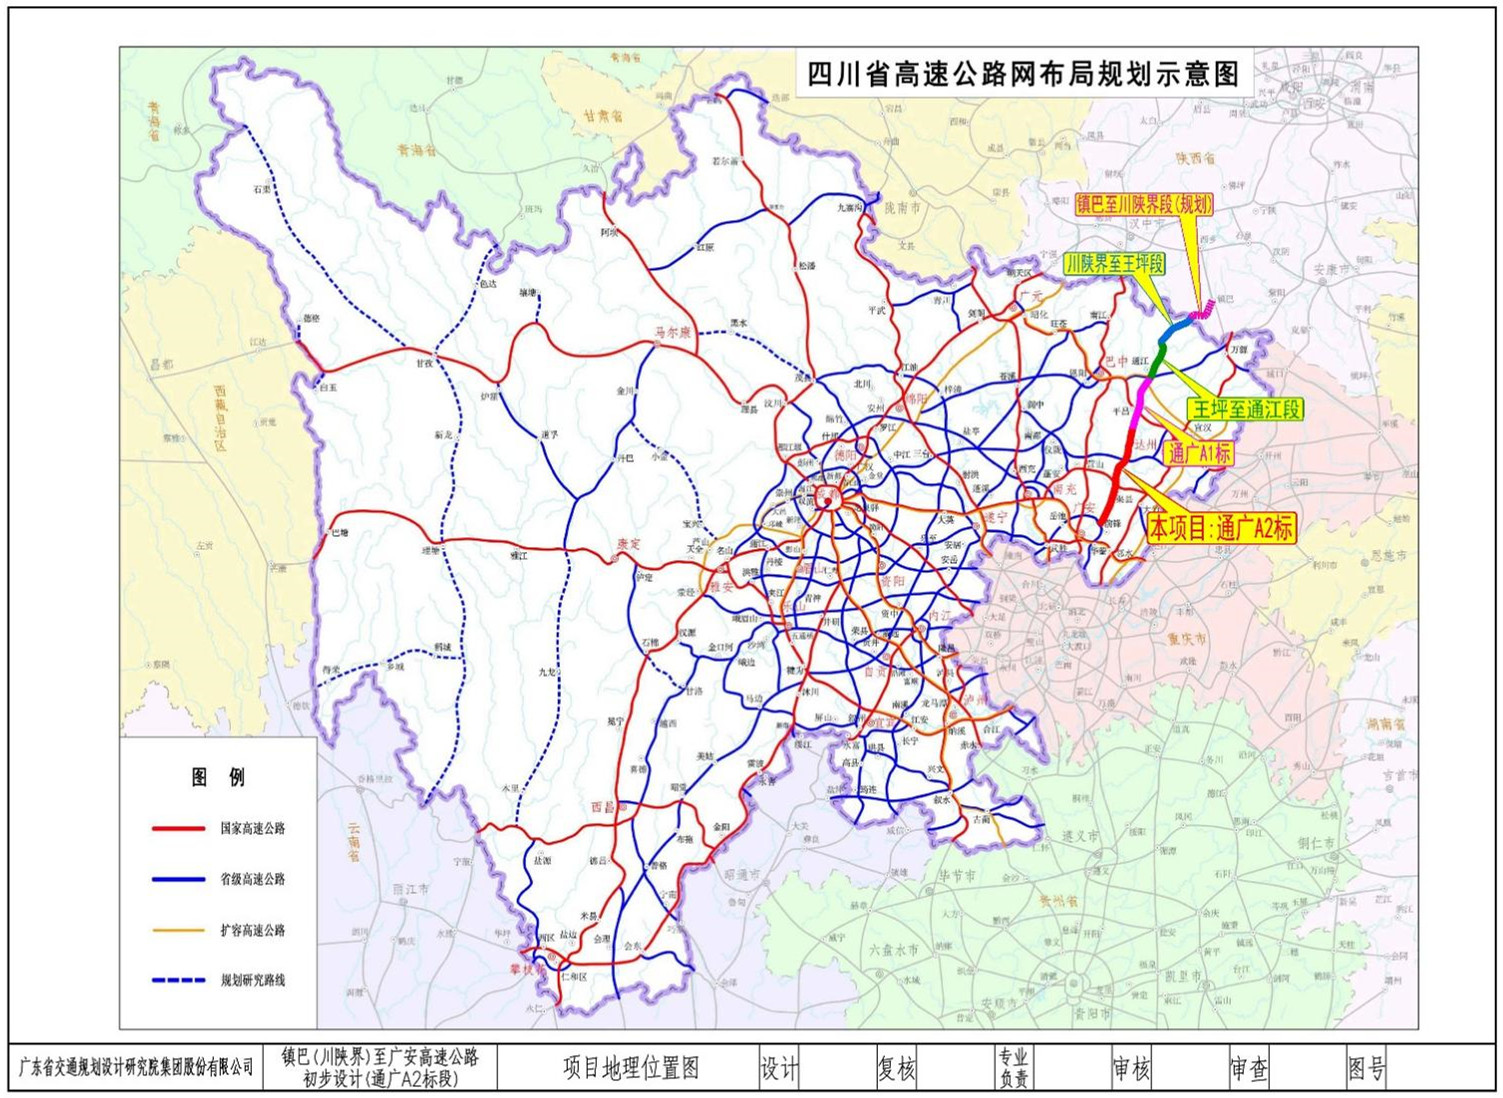 我司勘察设计的四川省重大项目镇巴至广安高速公路通江至广安段初步